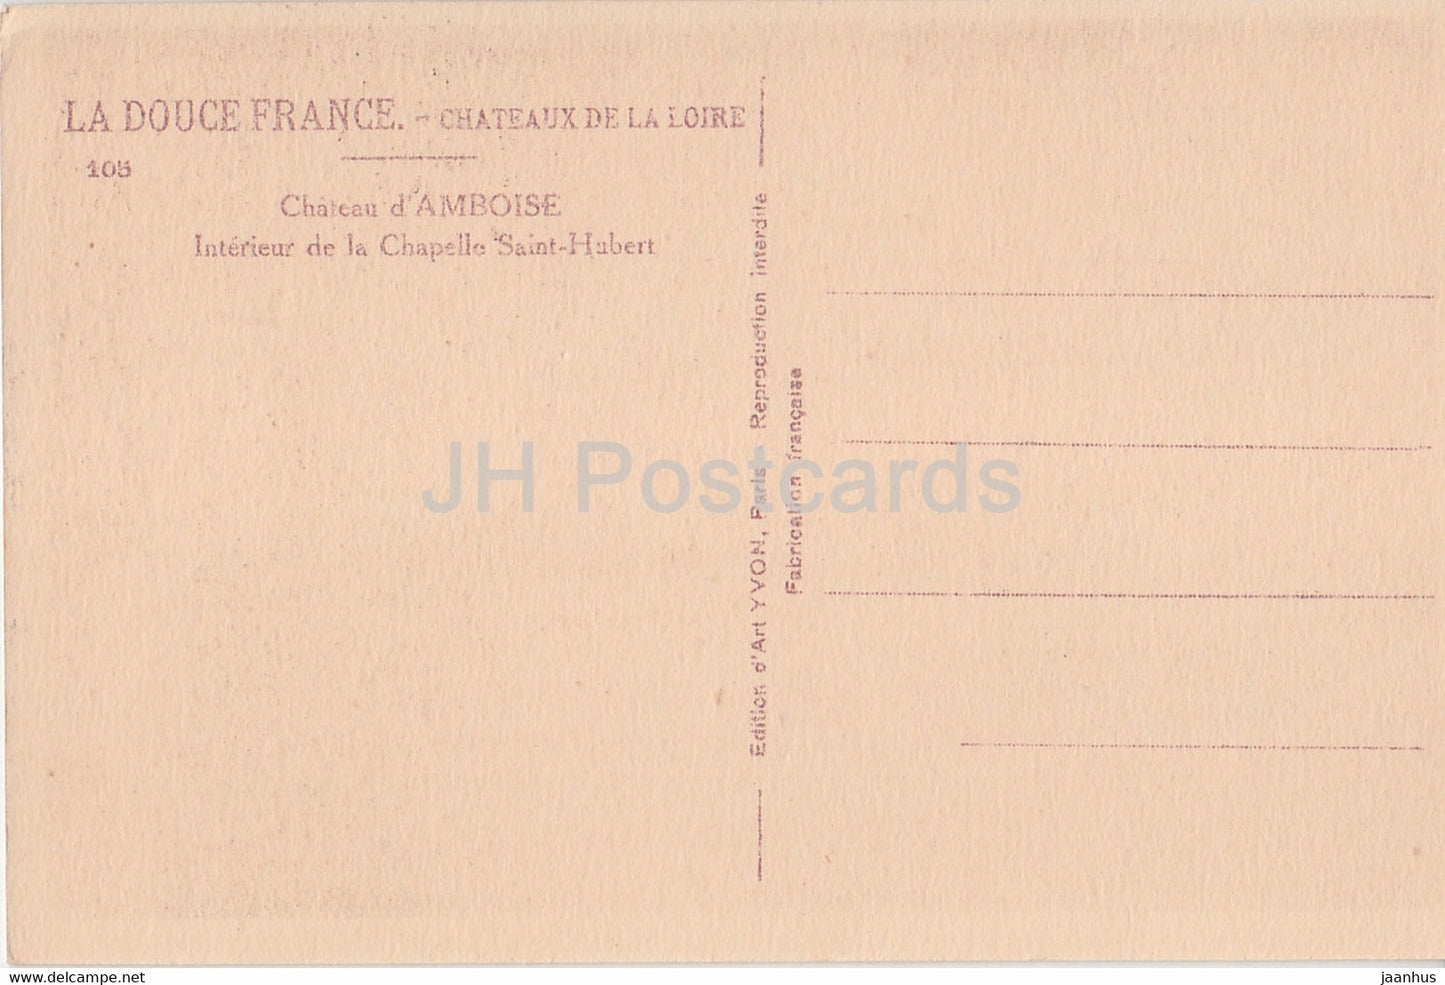 Chateau d'Amboise - Interieur de la Chapelle Saint Hubert - 105 - Schloss - alte Postkarte - Frankreich - unbenutzt